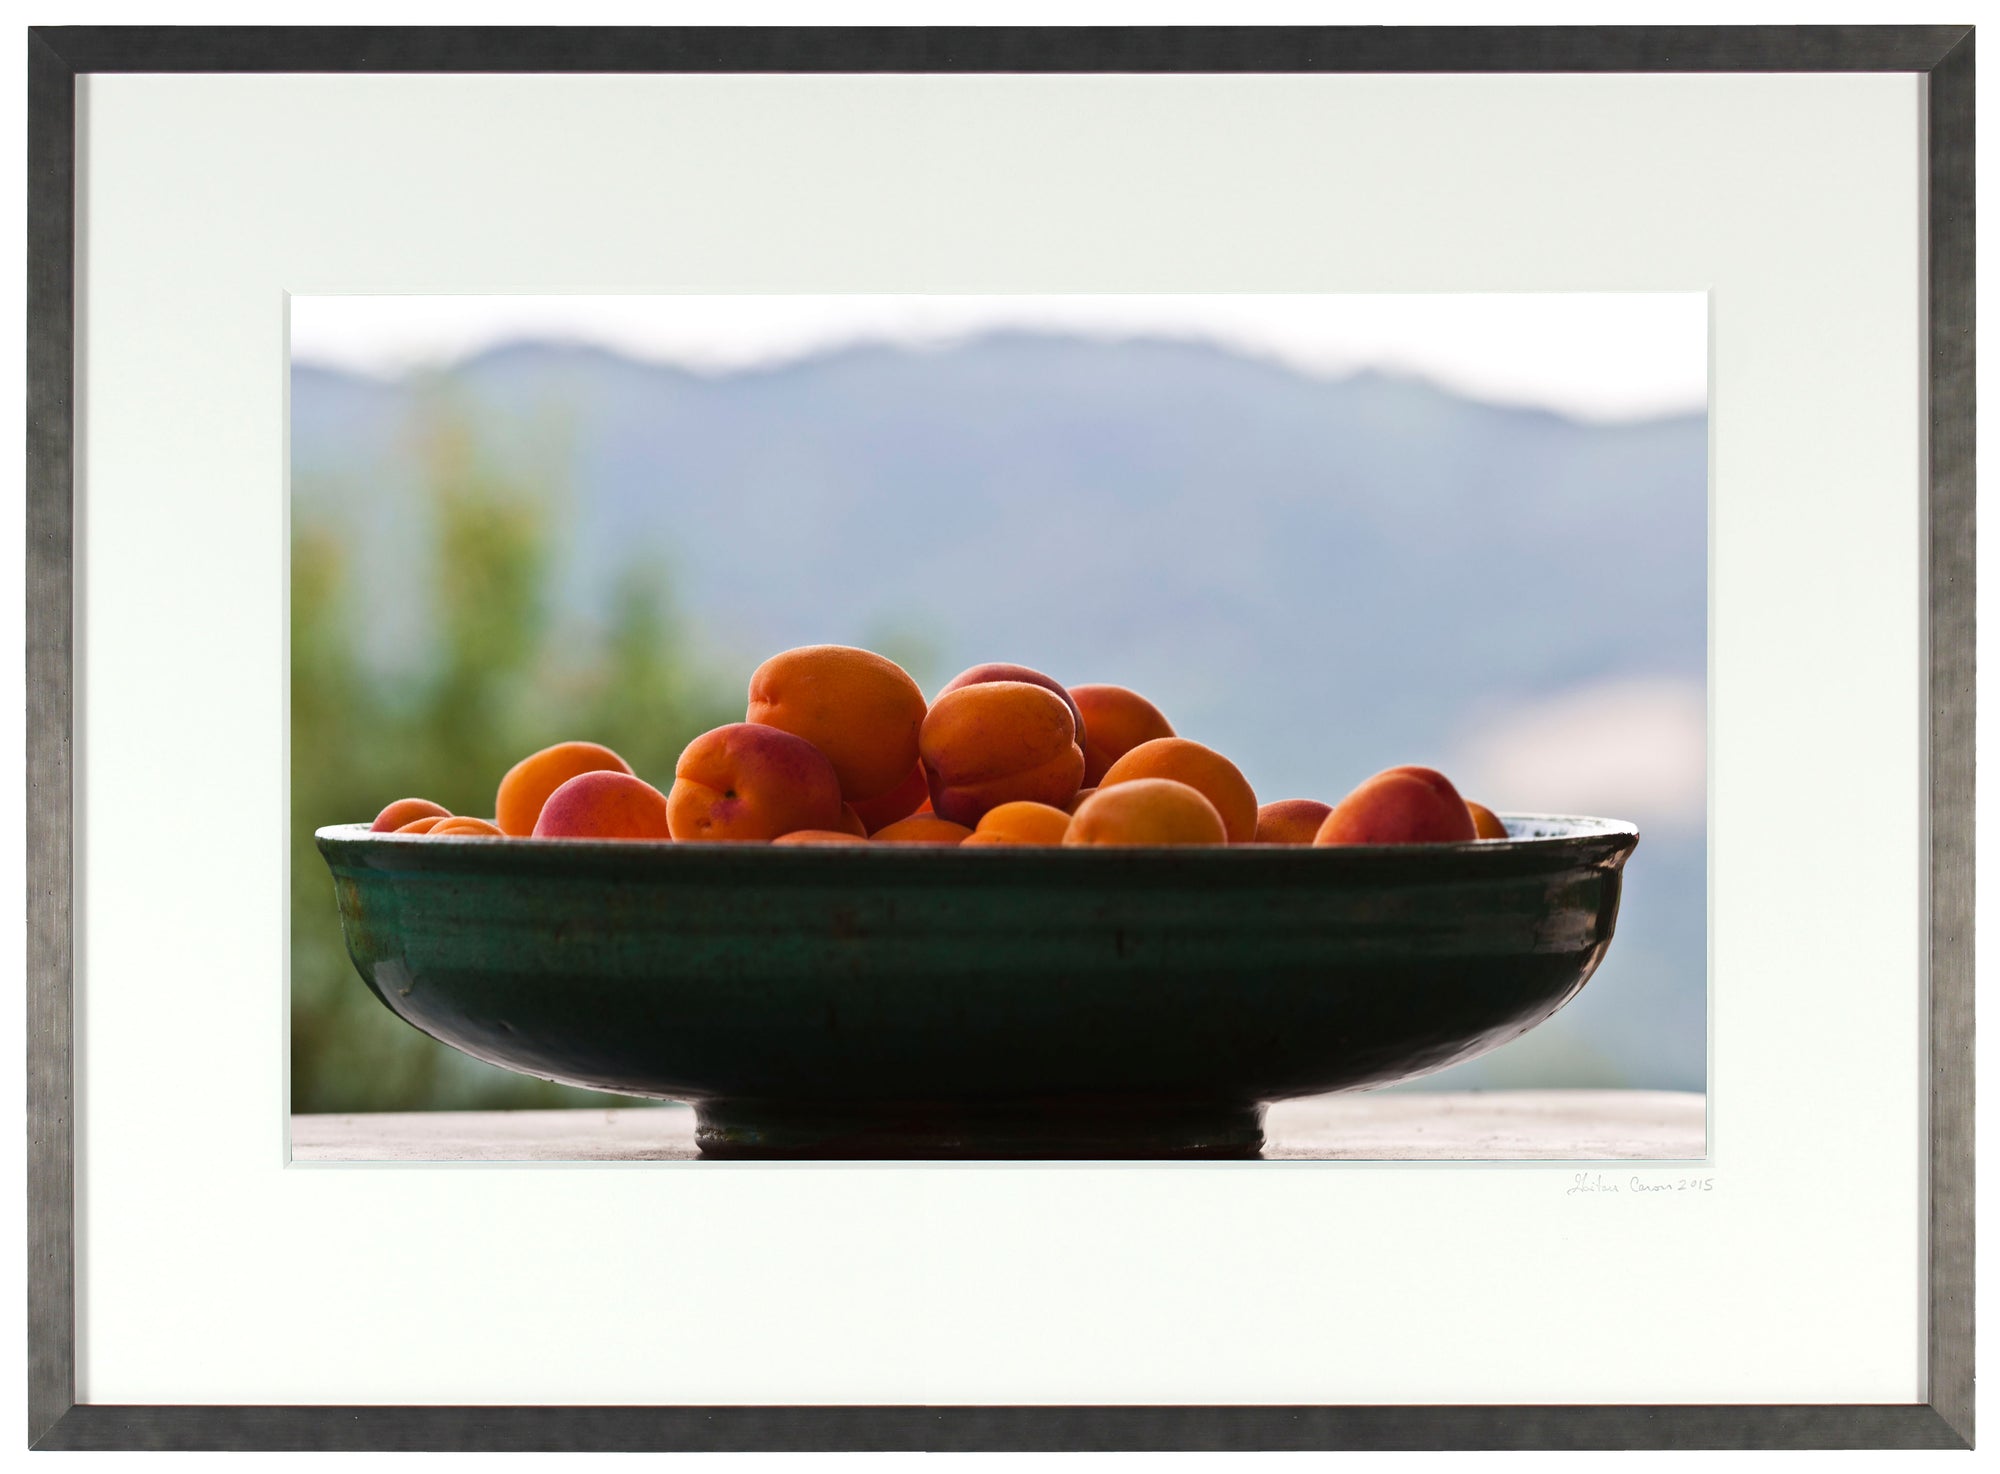 <I>Apricots</I><br>Mendocino, California, 2015<br><br>GC0407